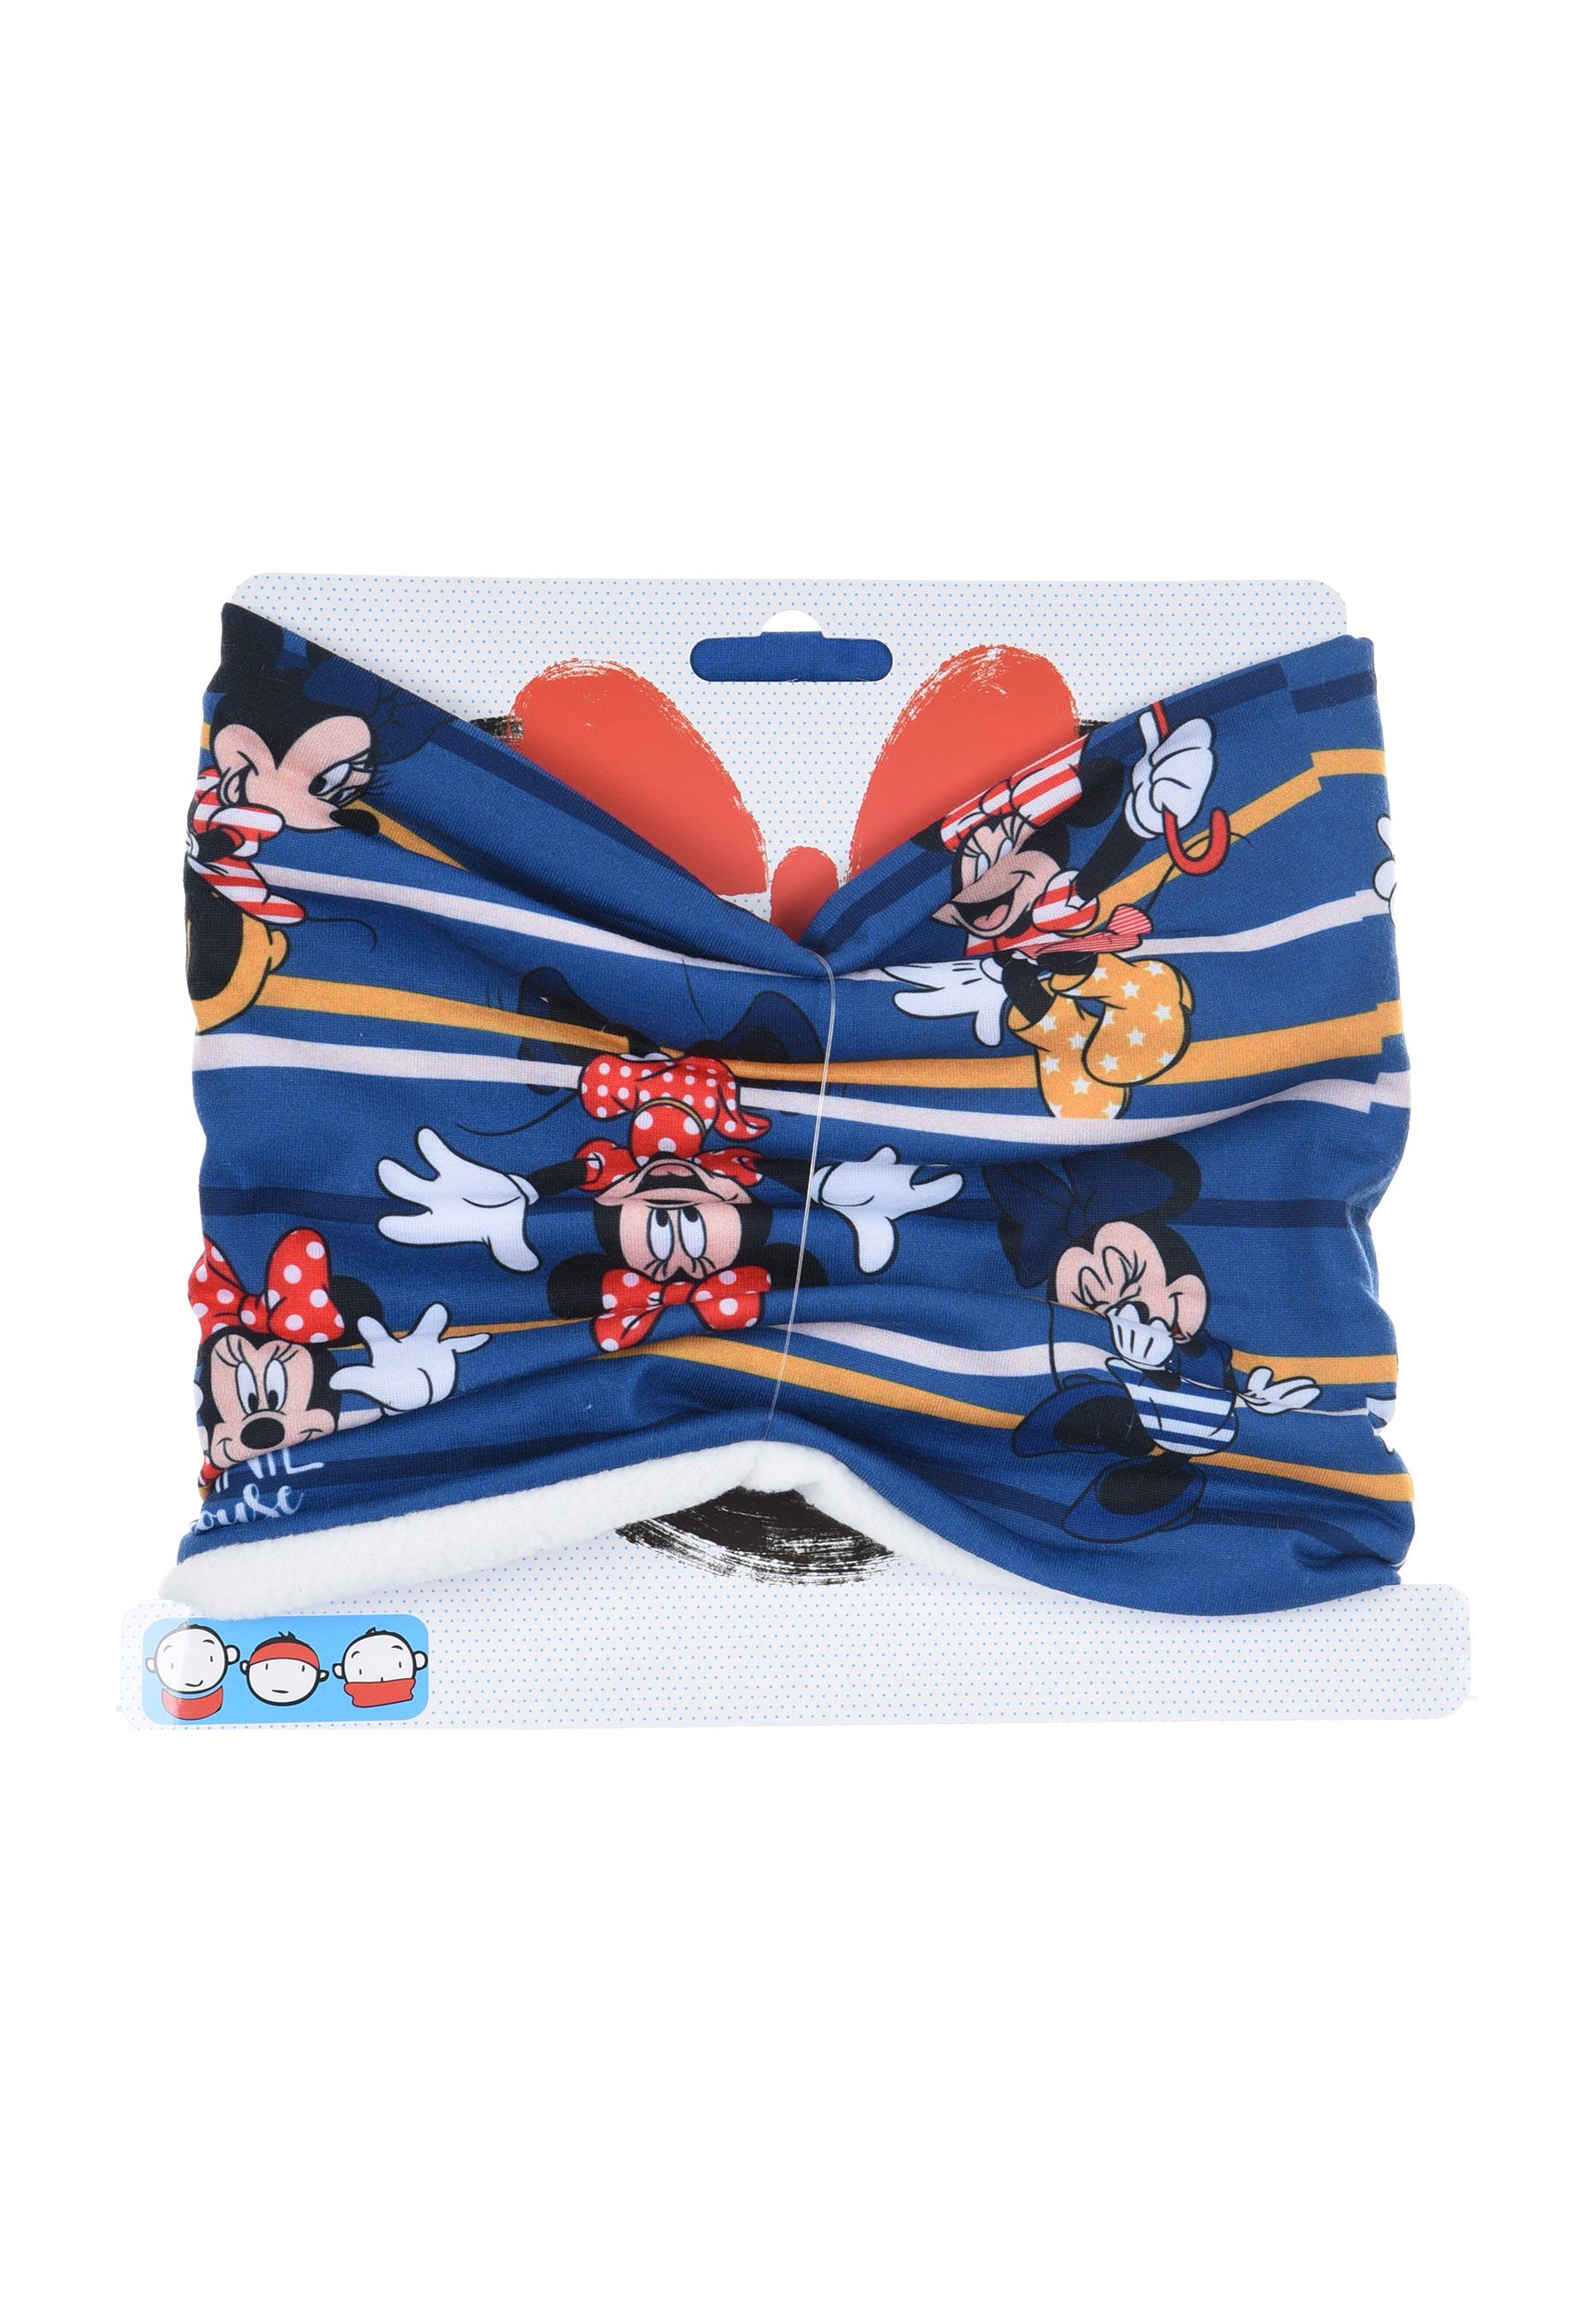 Disney Minnie Mouse Blau Schlauch-Schal, Mini Mädchen Loop Kinder Winter-Schal Maus